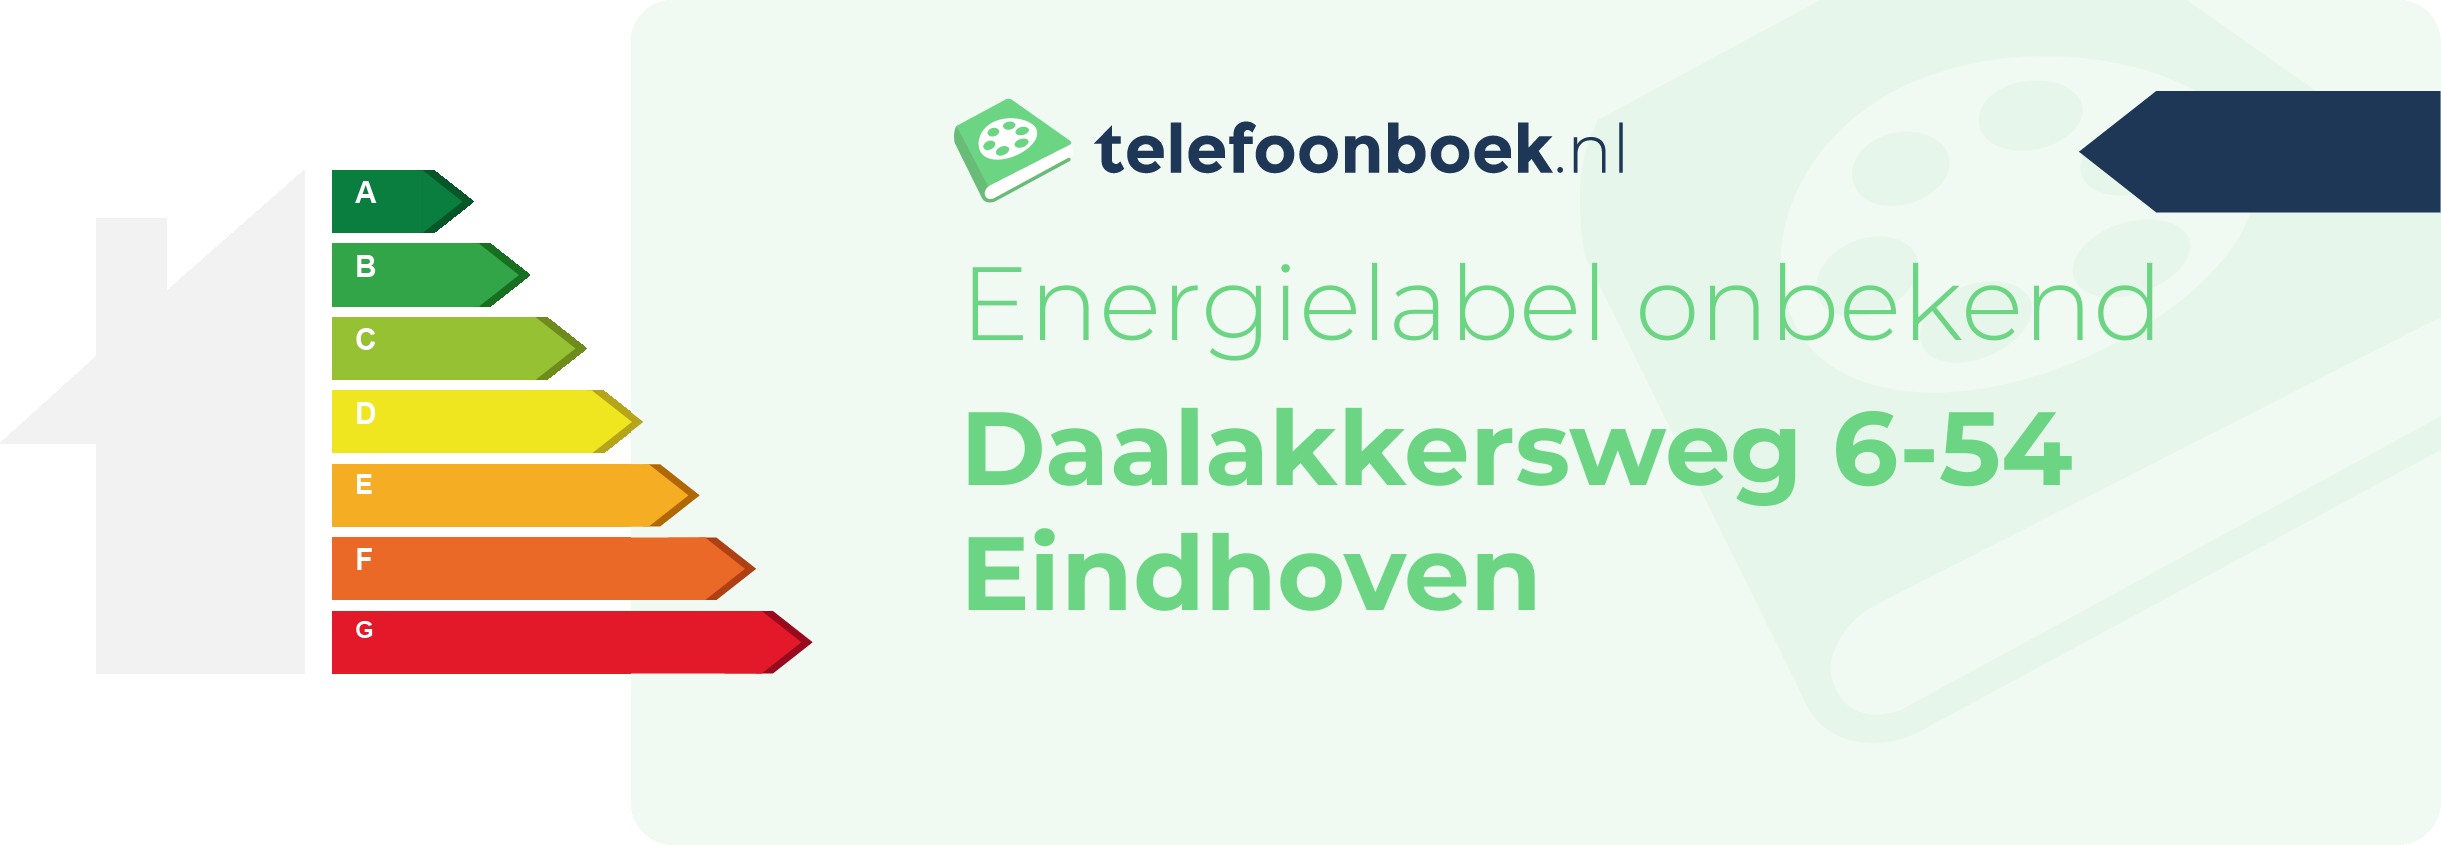 Energielabel Daalakkersweg 6-54 Eindhoven